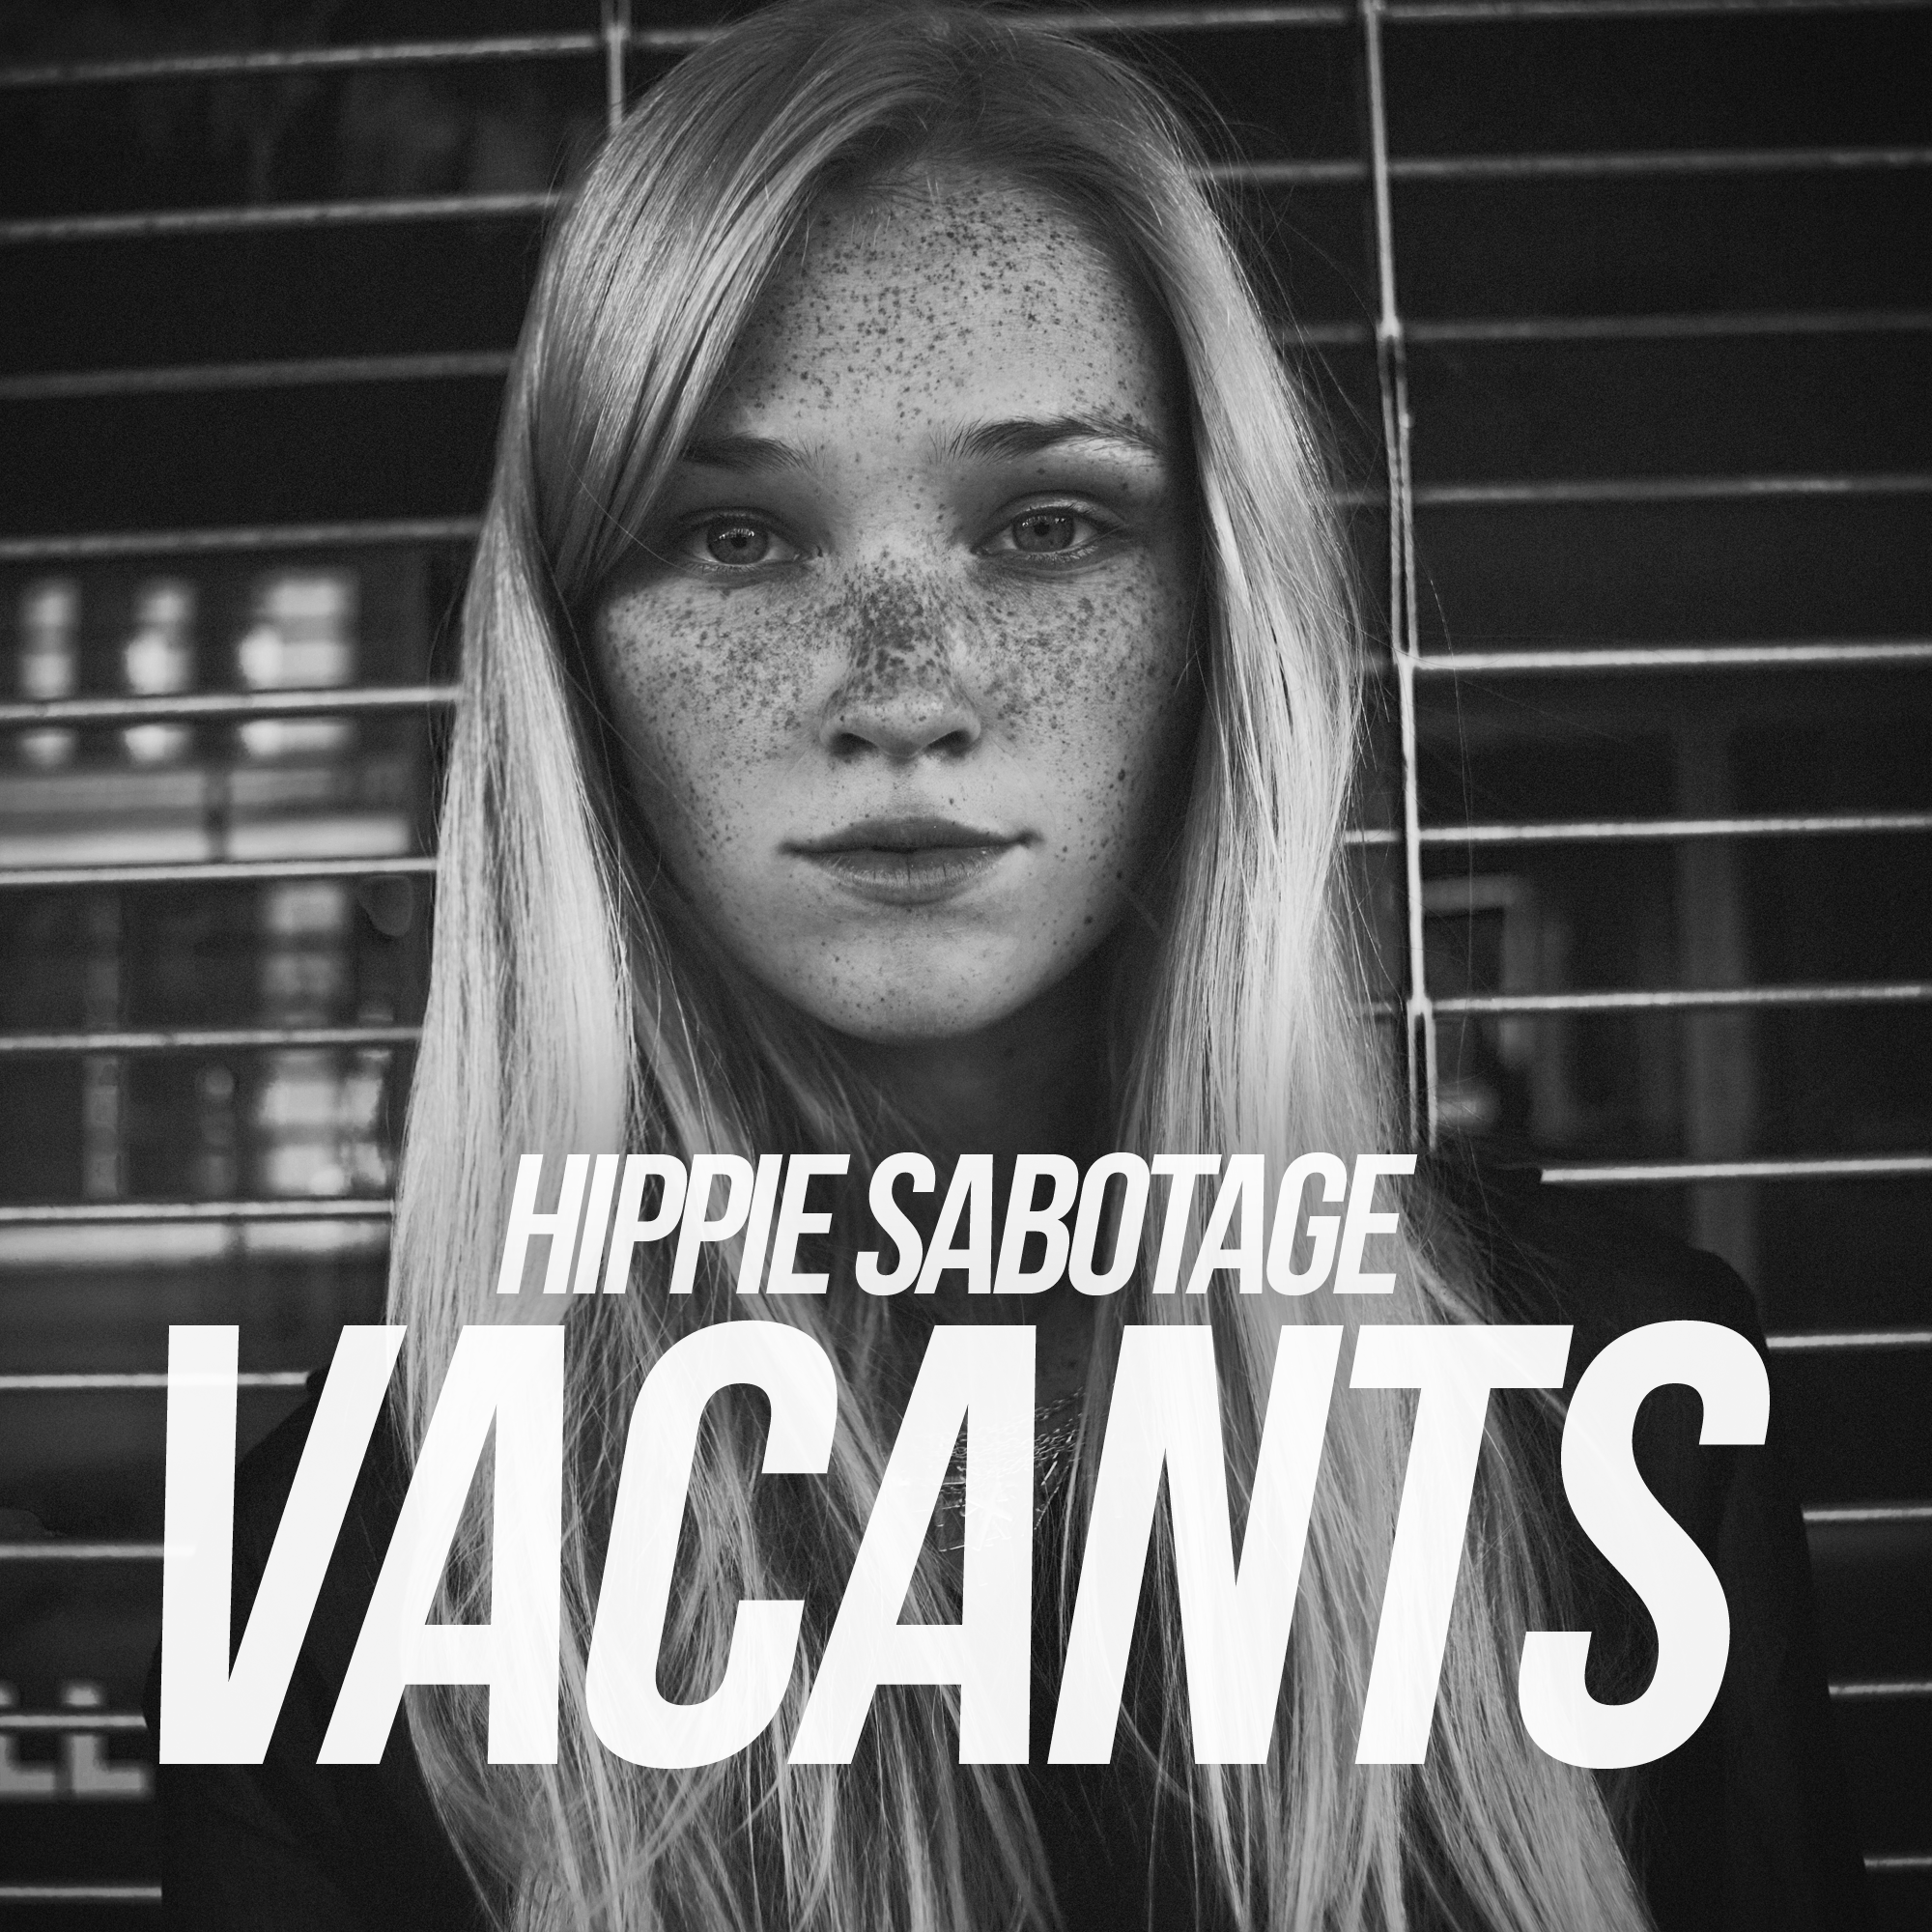 Hippie Sabotage - VACANTS [instrumentals]